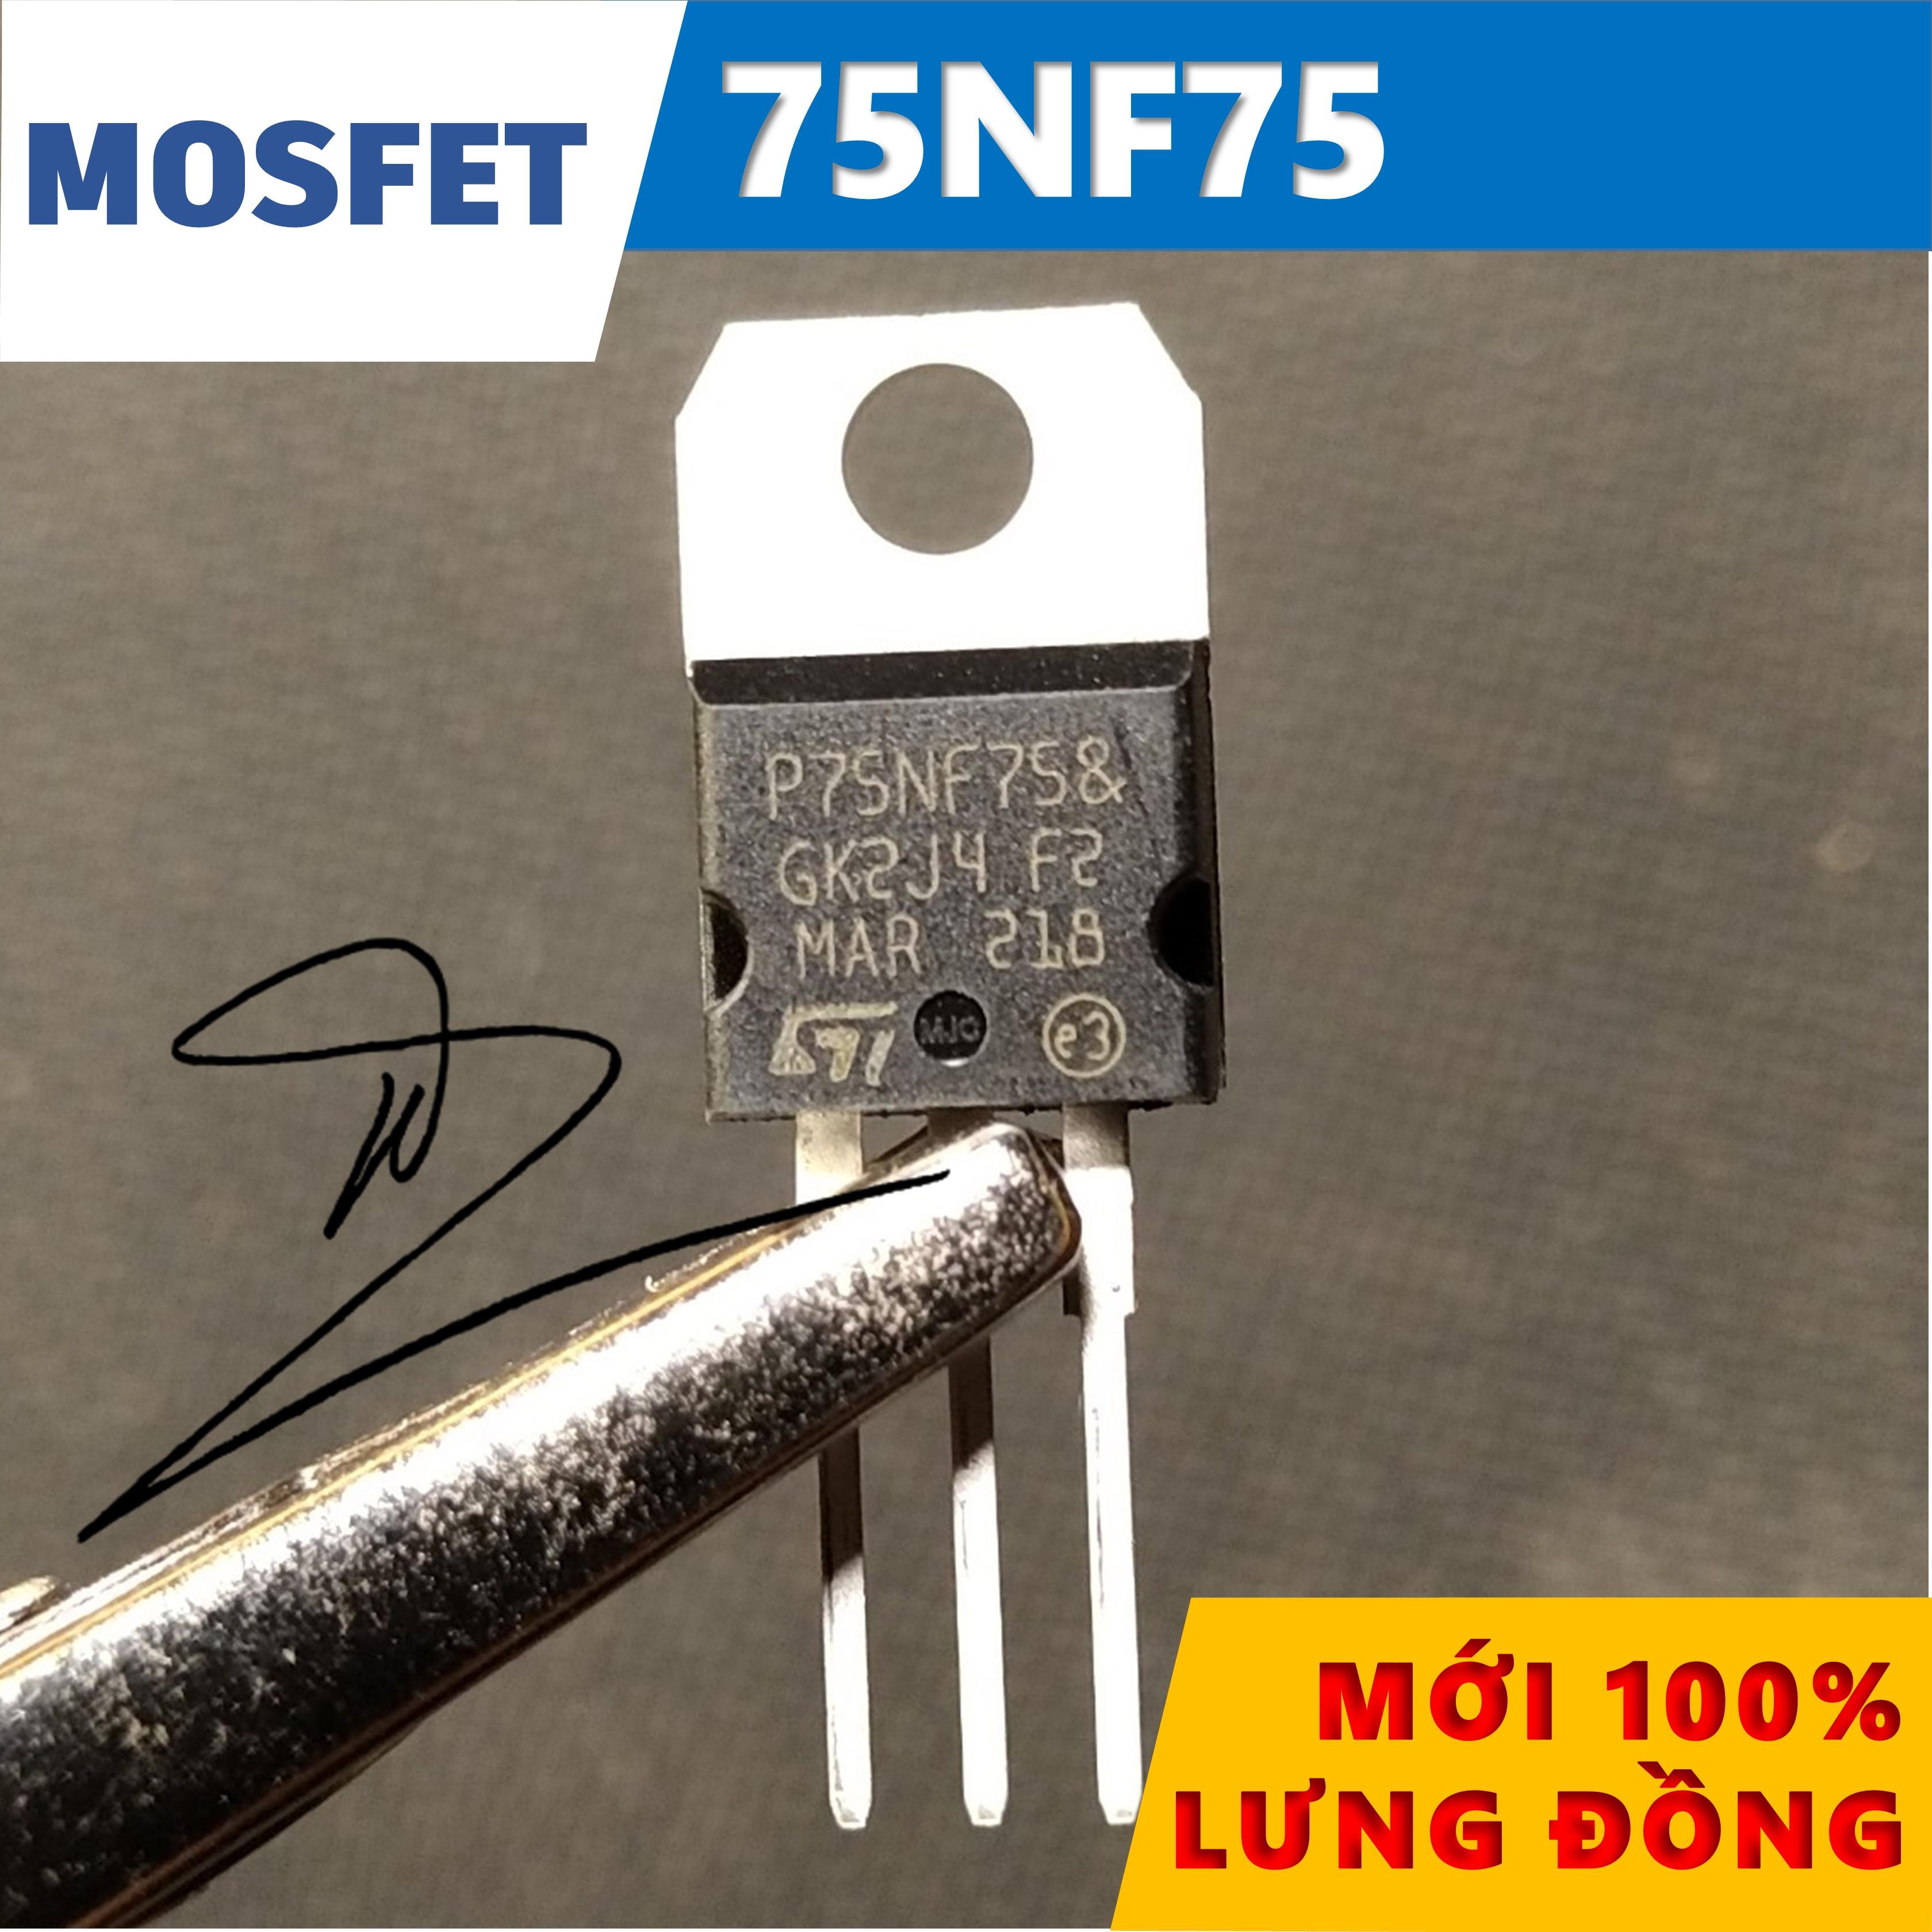 75NF75  MOSFET   Mới/Lưng đồng   80A/75V/300W    TO-220